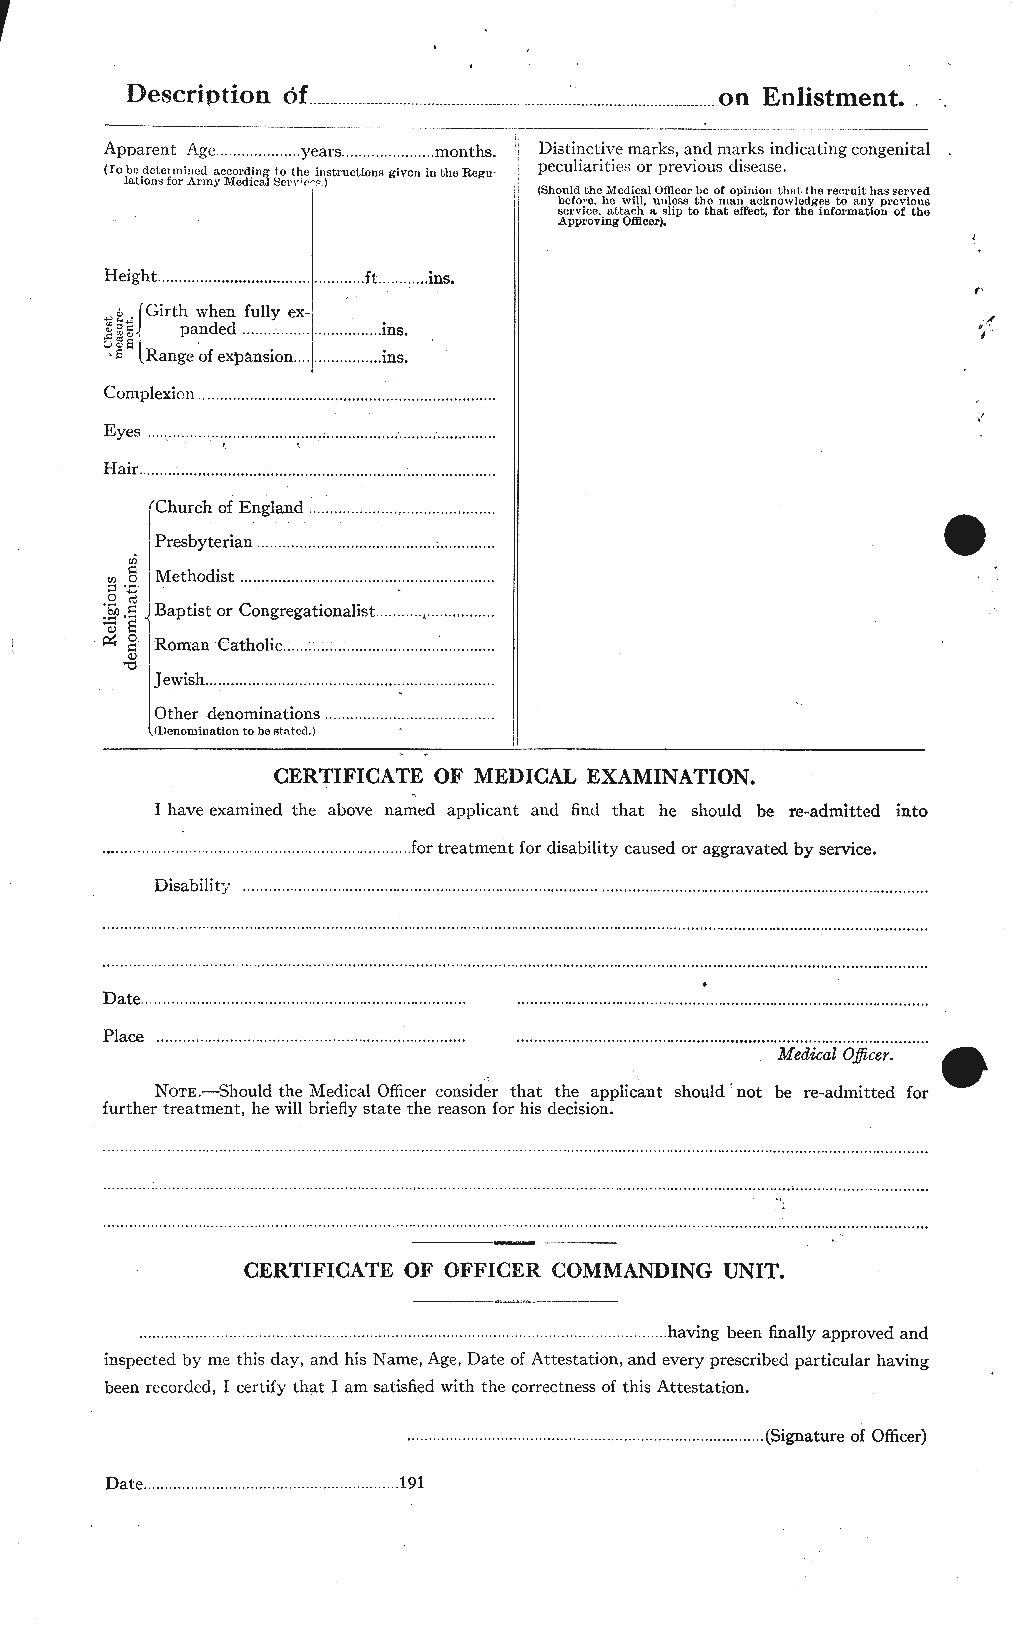 Dossiers du Personnel de la Première Guerre mondiale - CEC 462755b